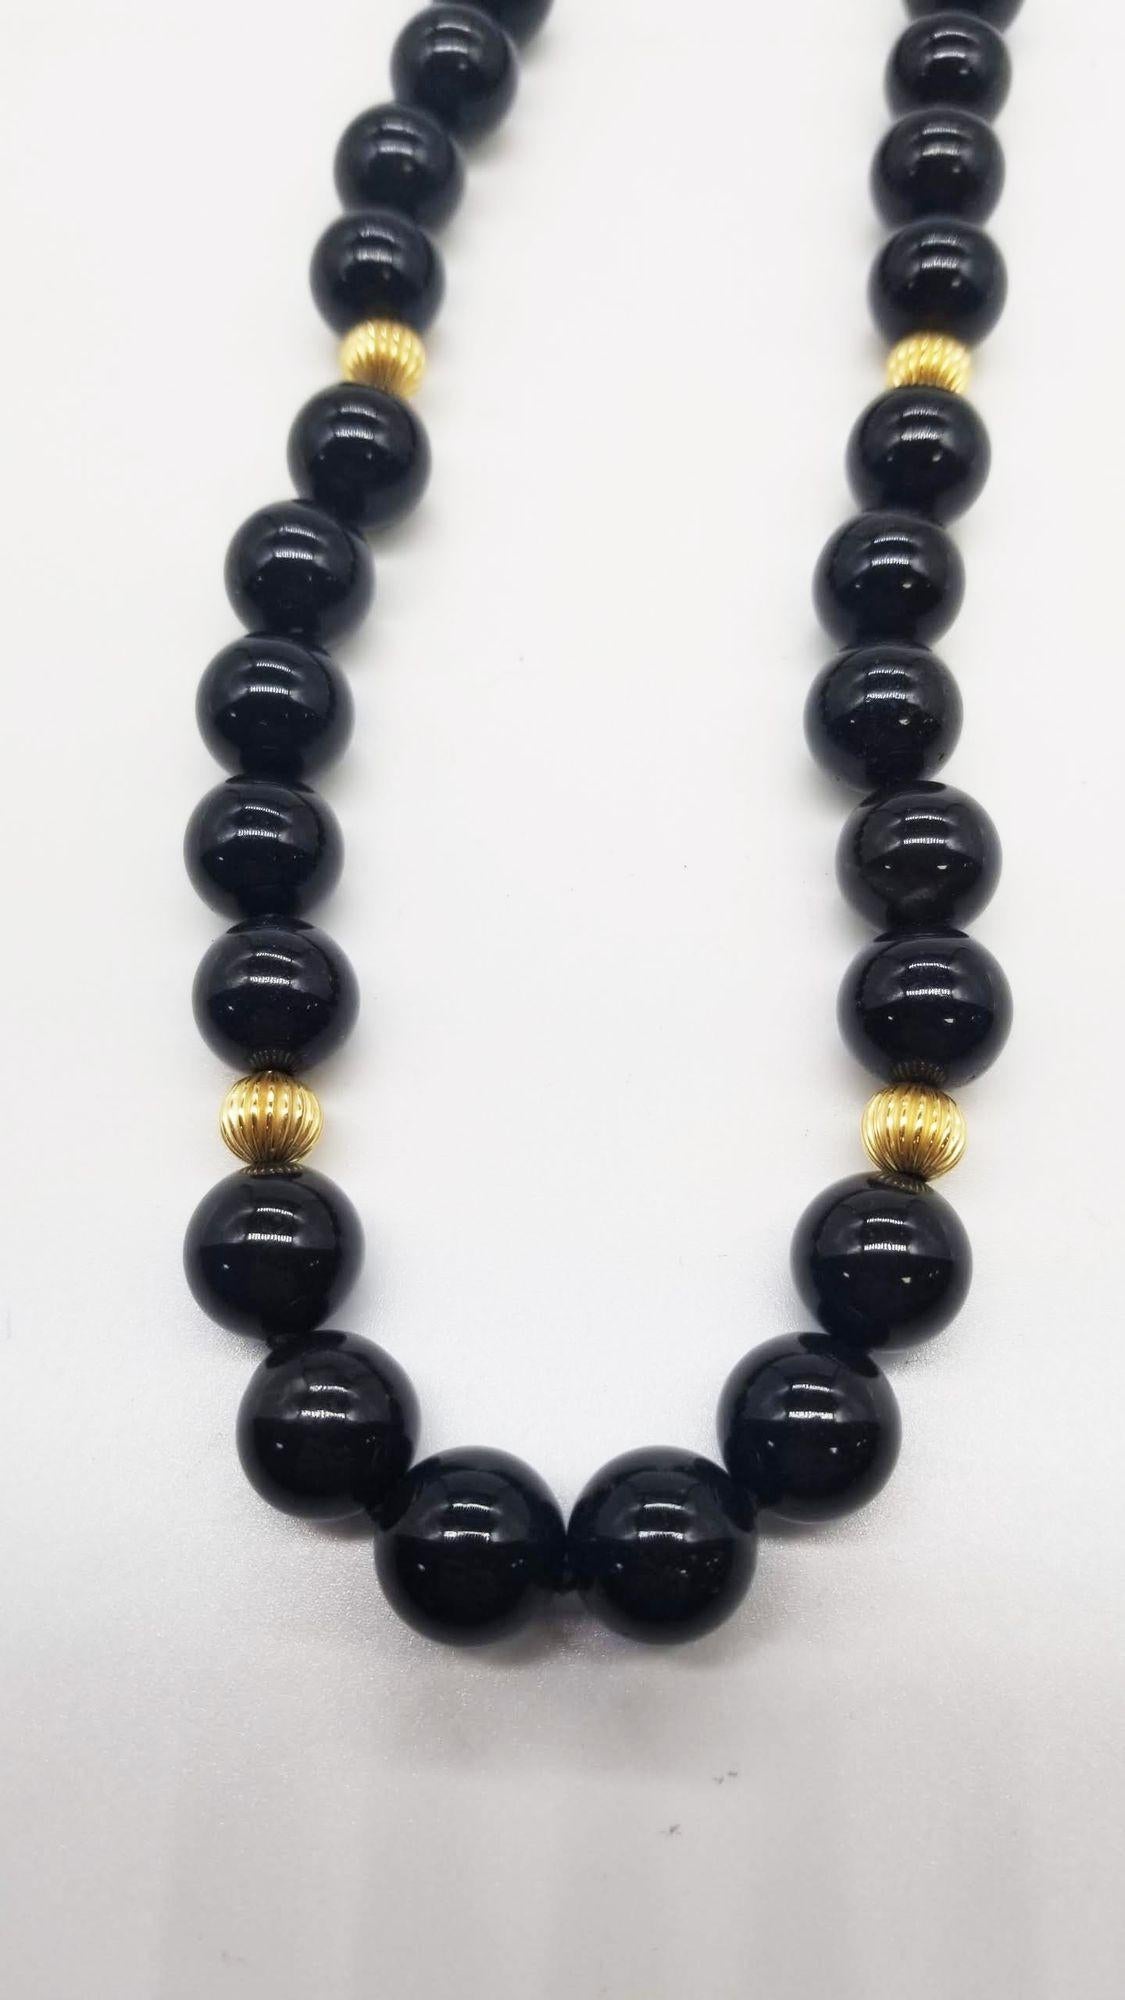 Diese aus der Mitte des Jahrhunderts stammende Halskette aus Obsidian und Goldperlen strahlt zeitlose Eleganz aus. Seine glatten, tiefschwarzen Obsidiansteine, die sorgfältig aneinandergereiht sind, machen ihn zu einem raffinierten Accessoire. Das